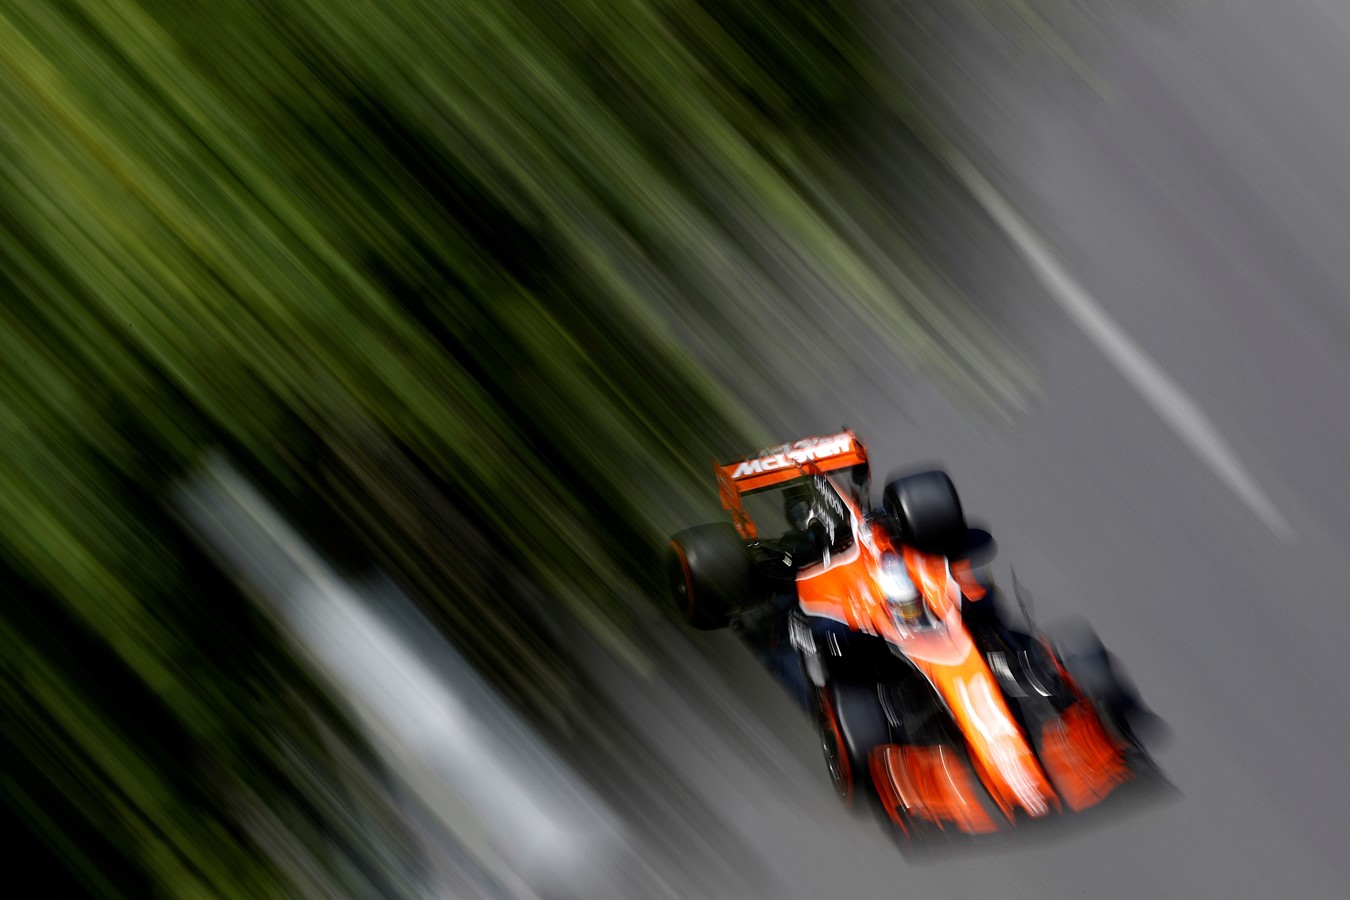 McLaren-Honda take first points of the year in Baku